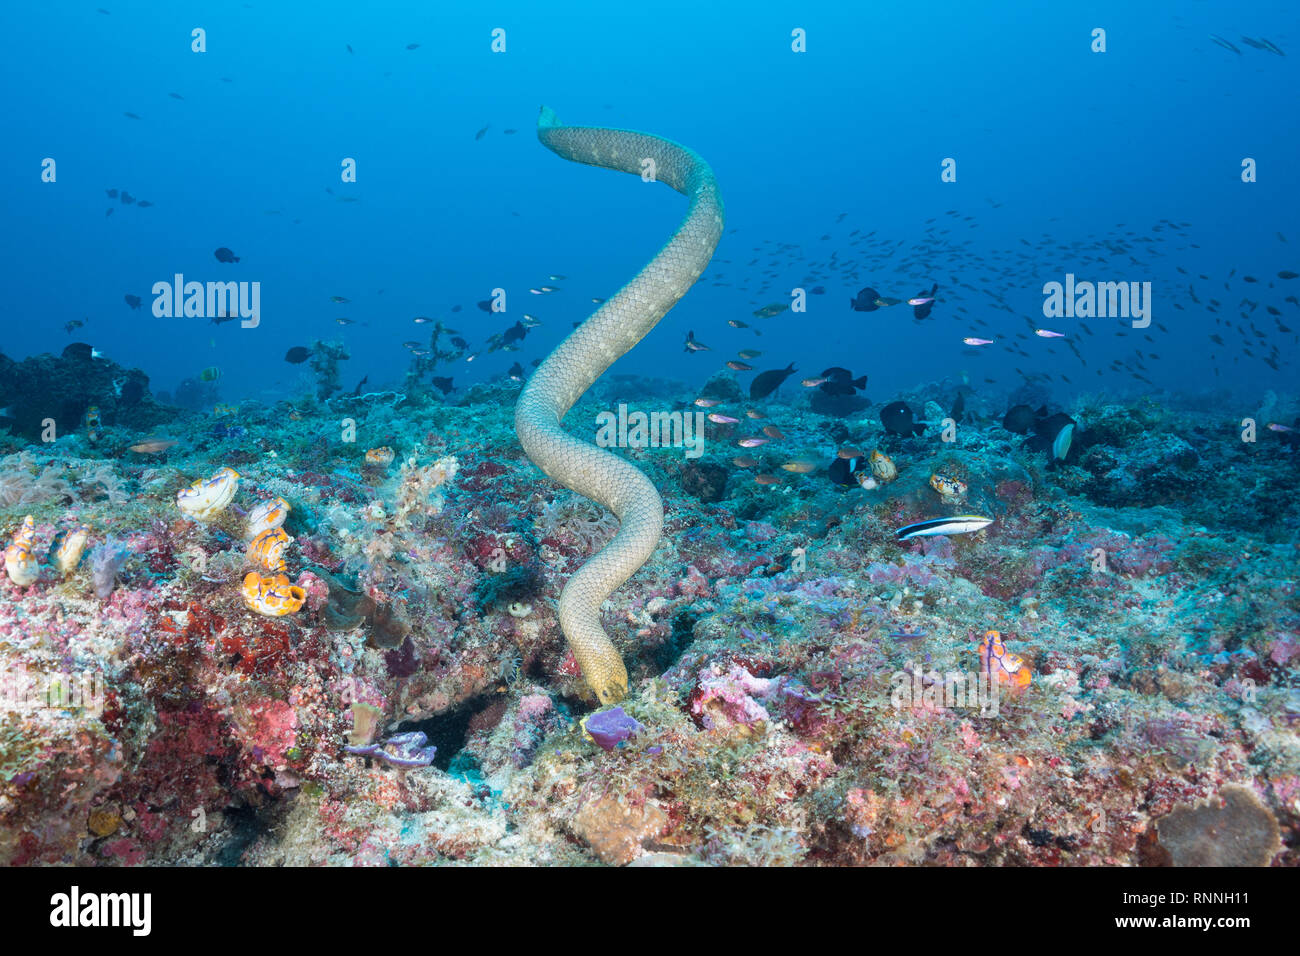 La serpiente de mar de oliva o dorada, Aipysurus seasnake laevis, caza de presas en las grietas de los arrecifes de coral en montes submarinos, Kei ( o Kai ) Islas, Indonesia Foto de stock